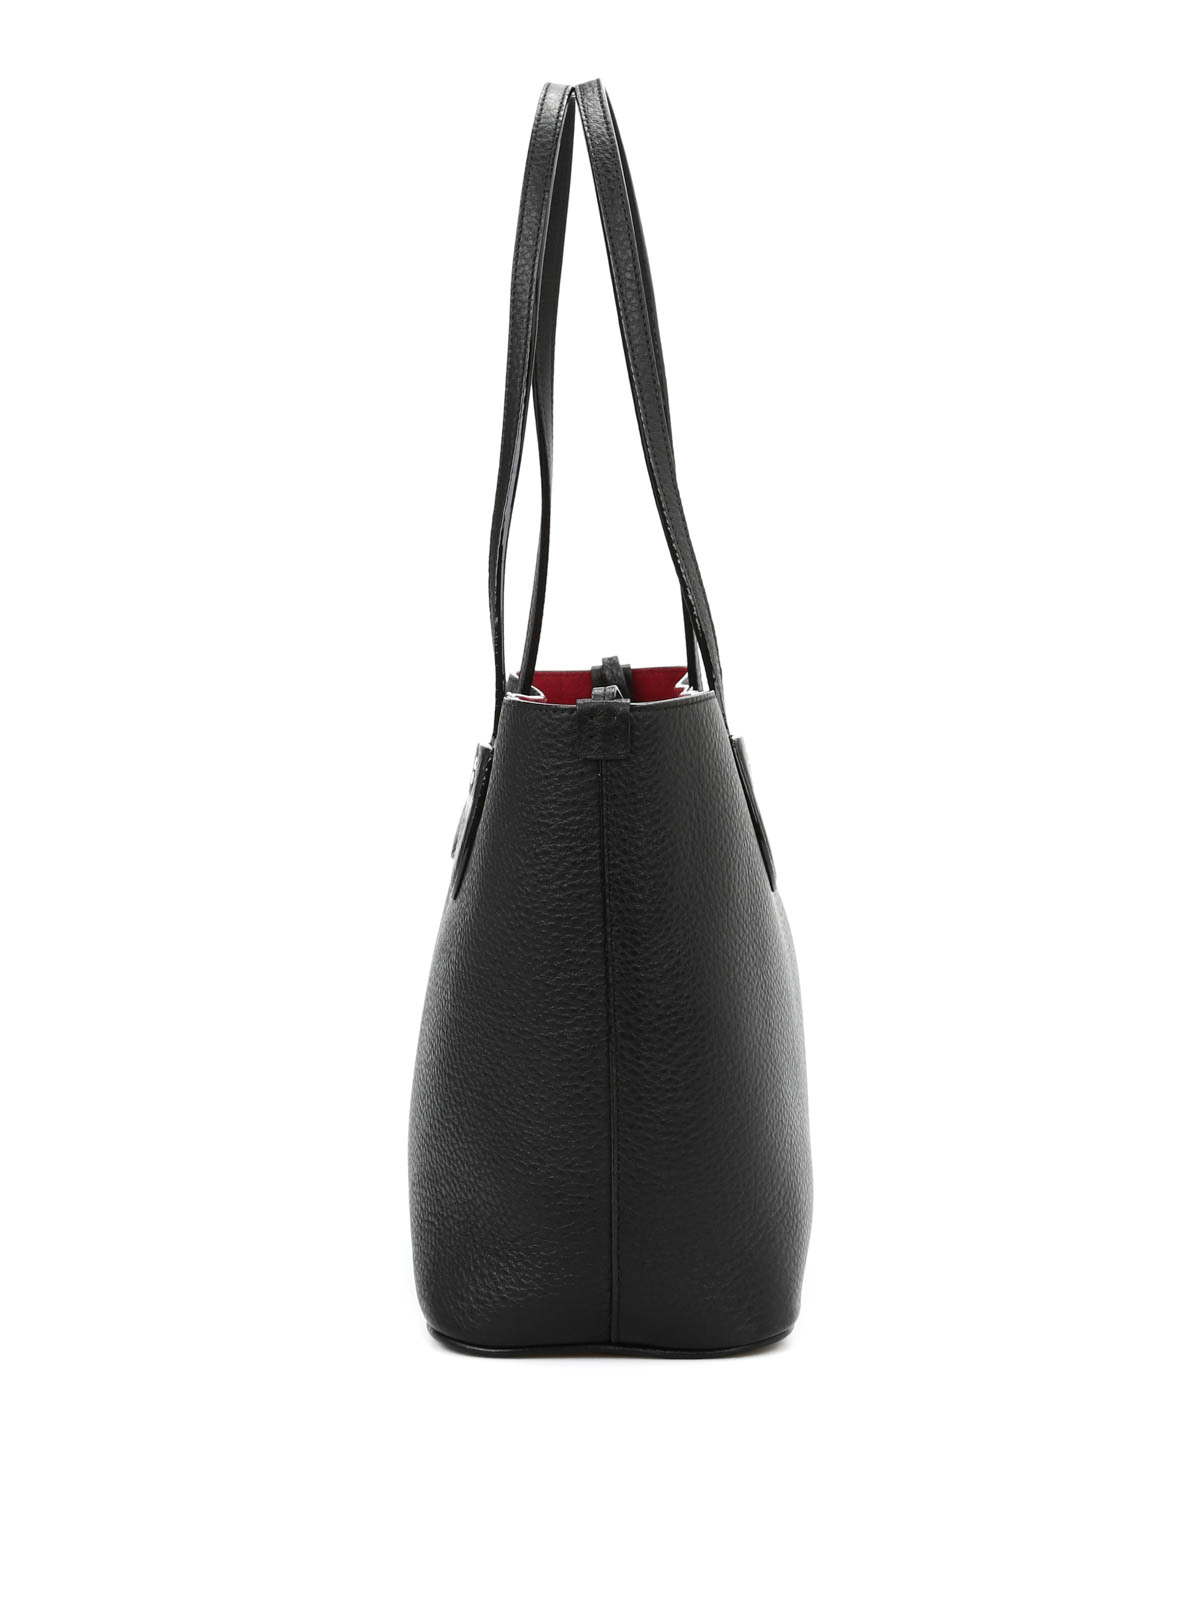 Totes bags Bally - Bernina Small tote - 6203910 | Shop online at iKRIX